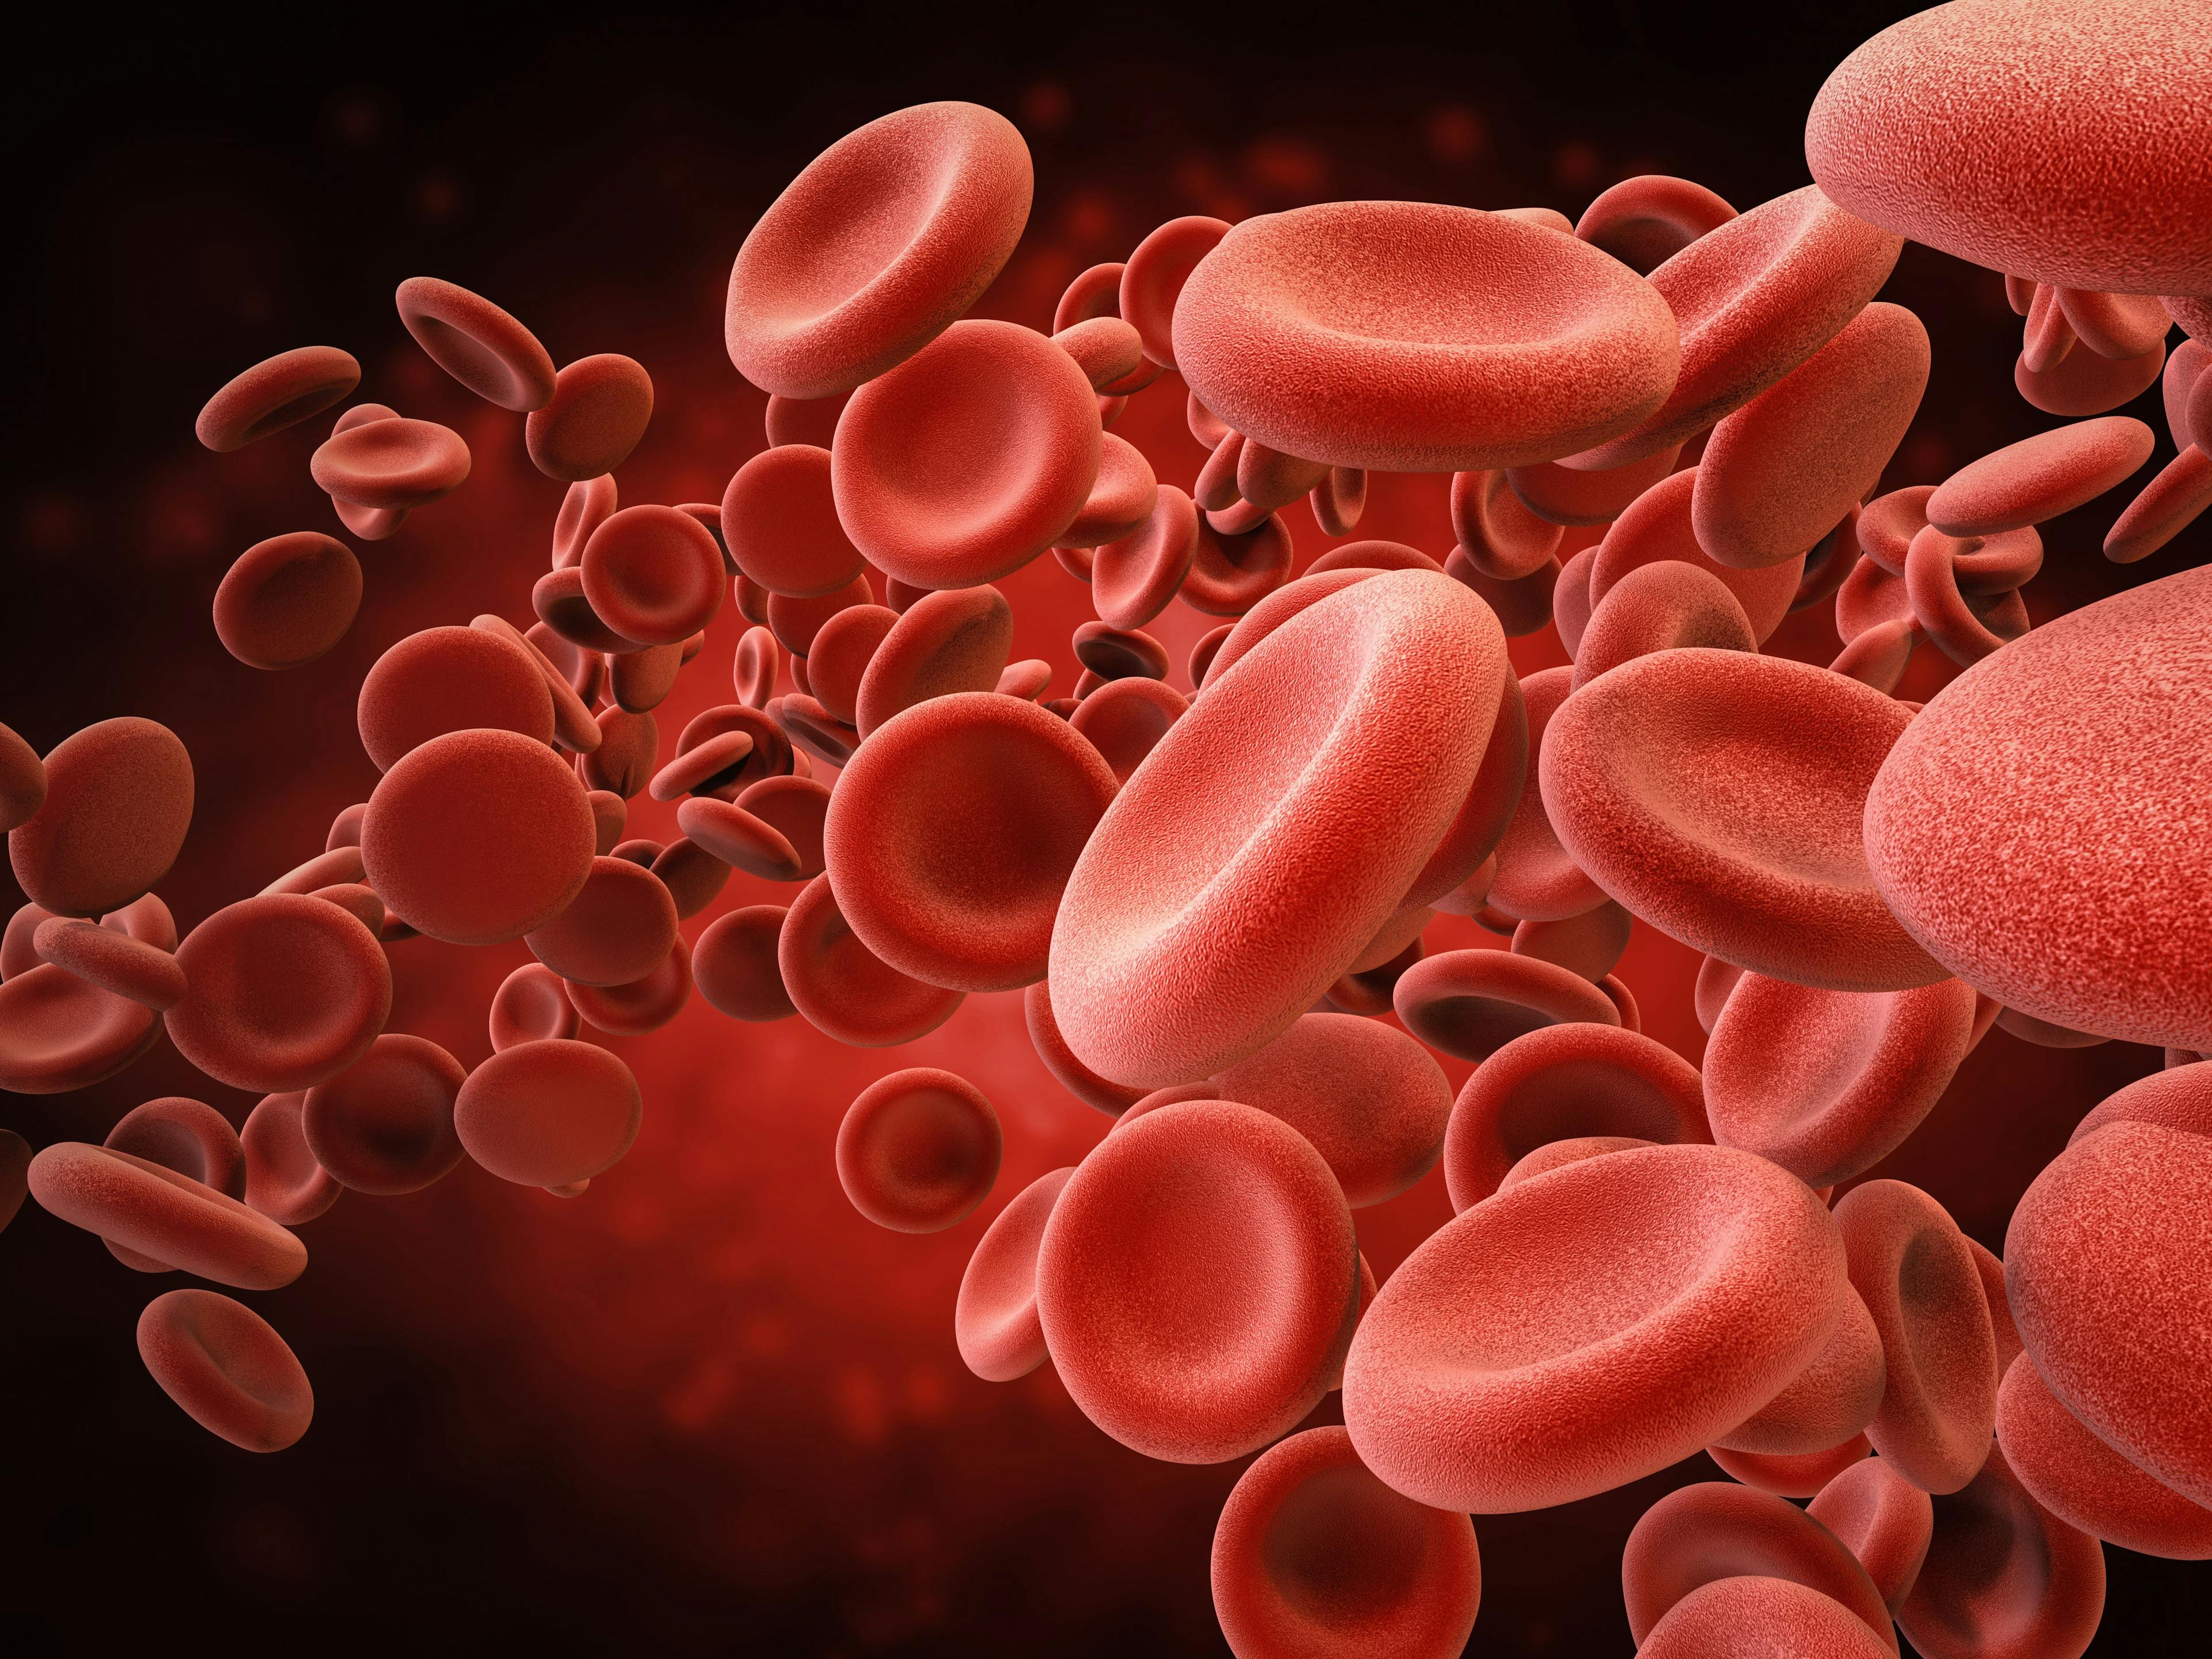 Digital illustration of blood cells